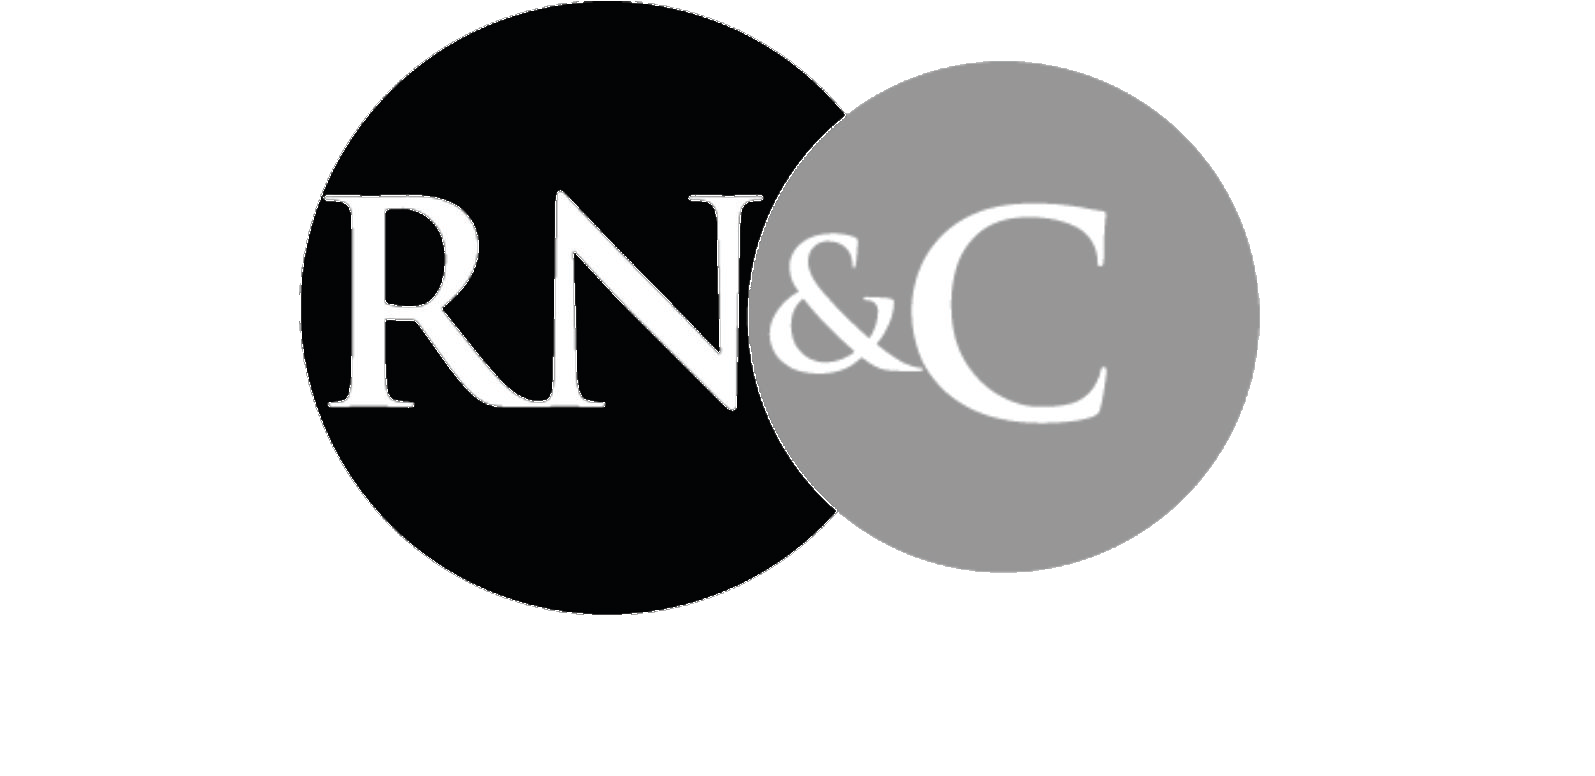 Reginald Nwobbi & Co